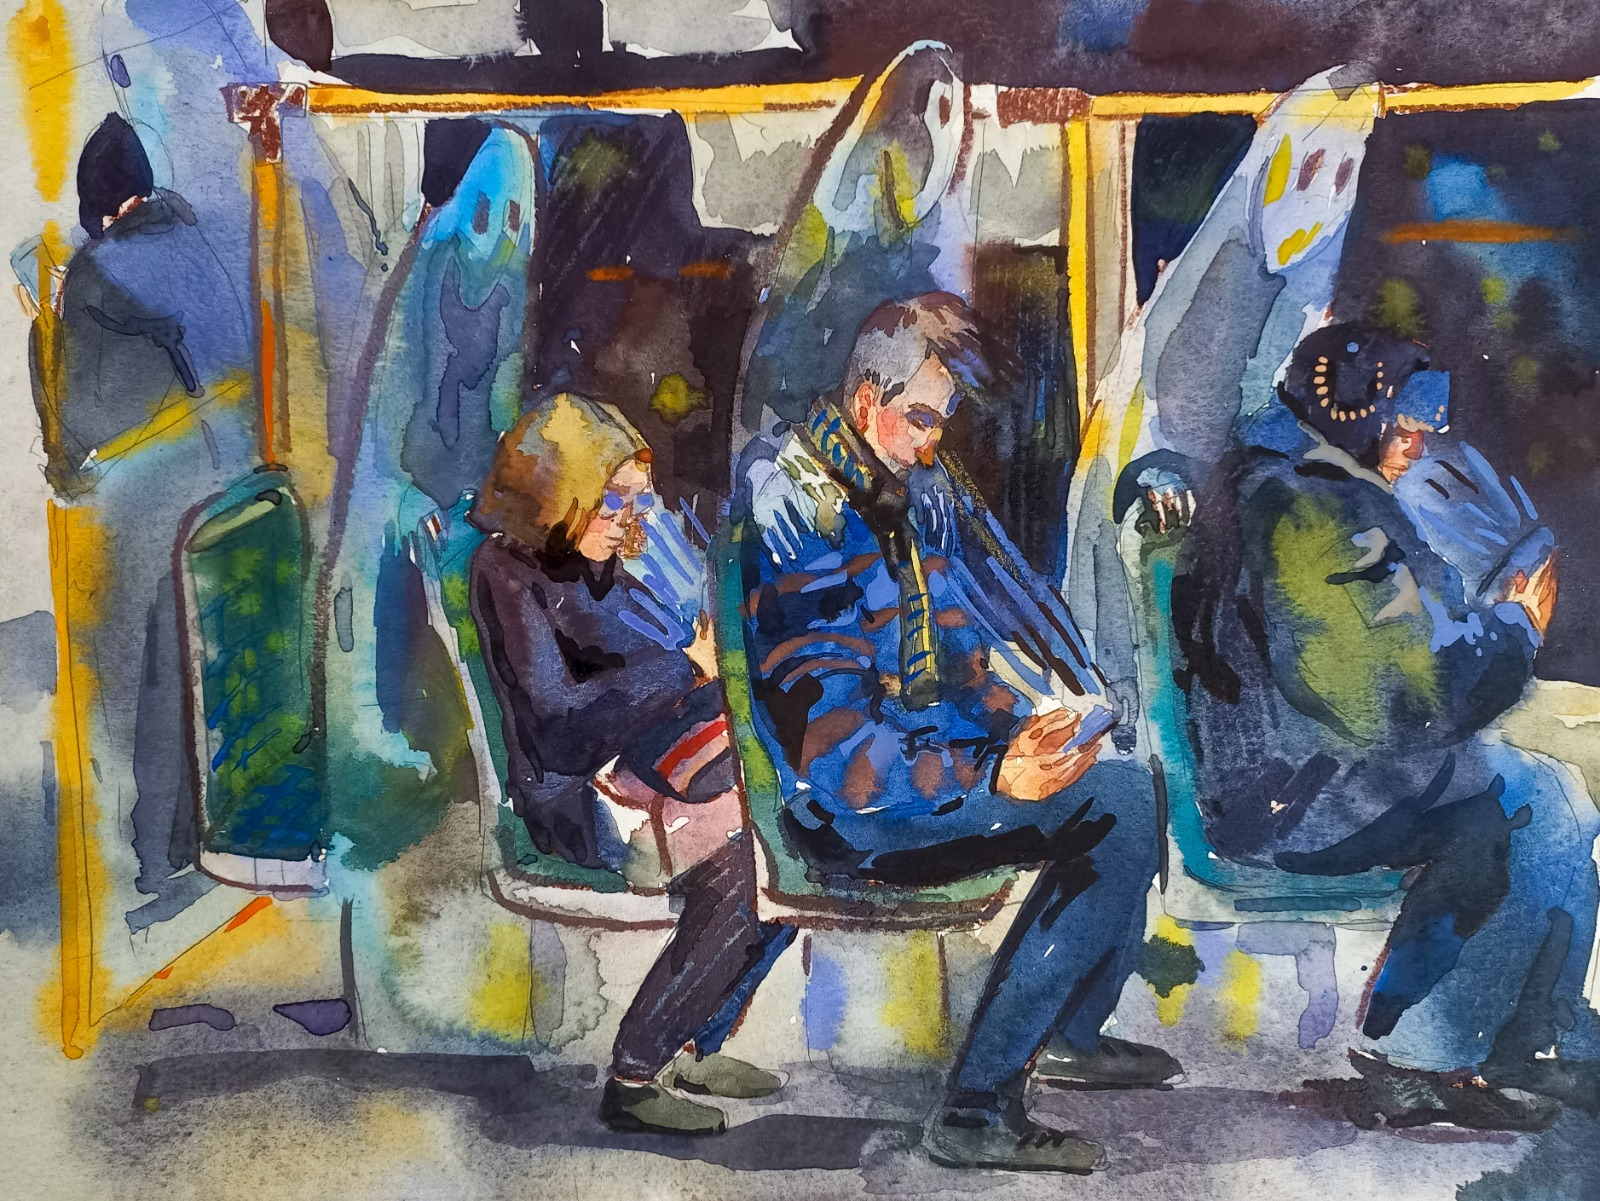 In a tram